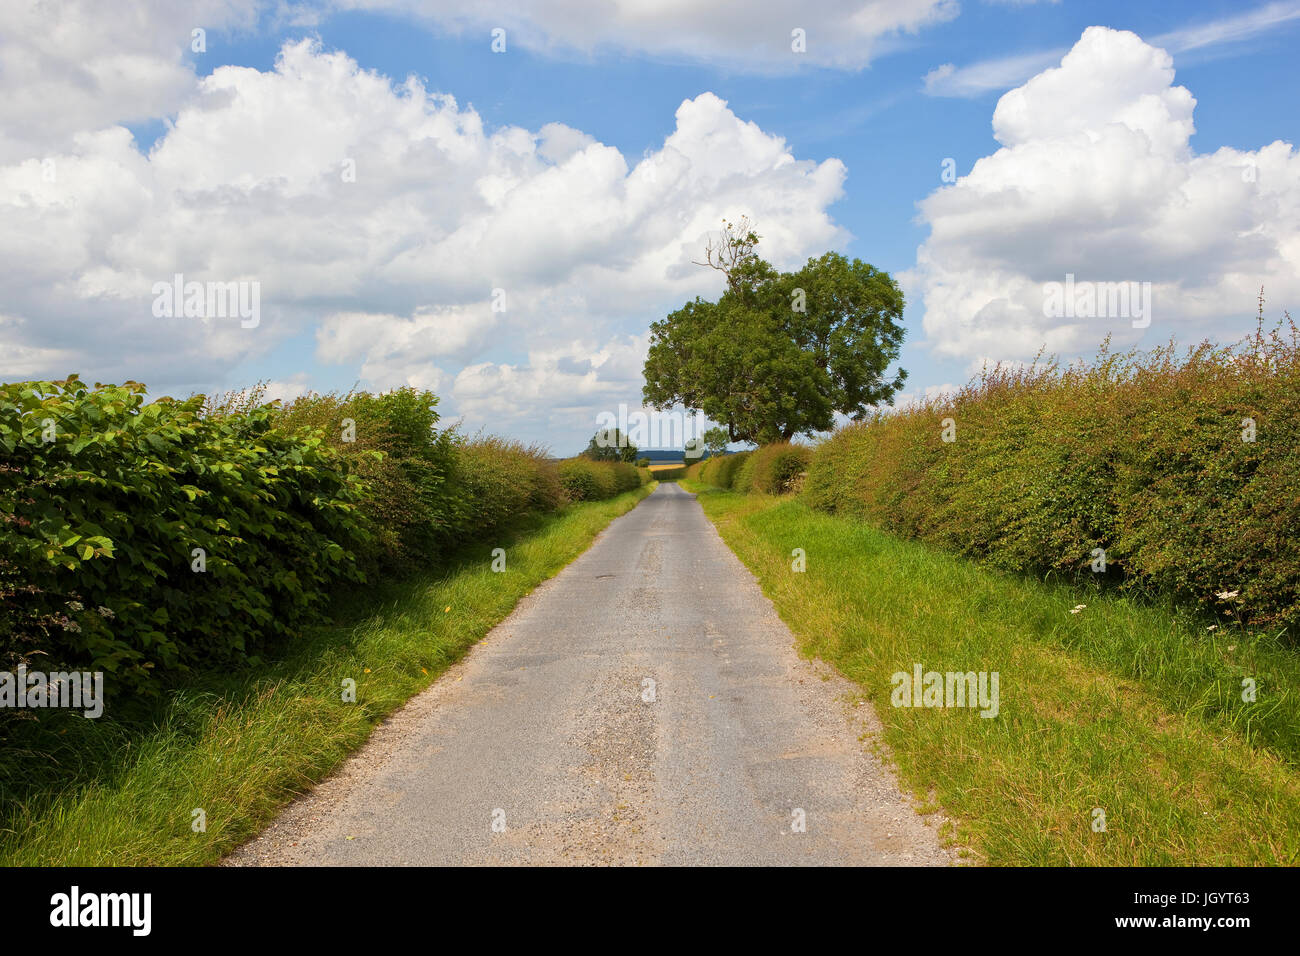 Un verano country road con un árbol de roble a través de pequeños campos agrícolas en el Yorkshire Wolds bajo un cielo azul con nubes blancas Foto de stock